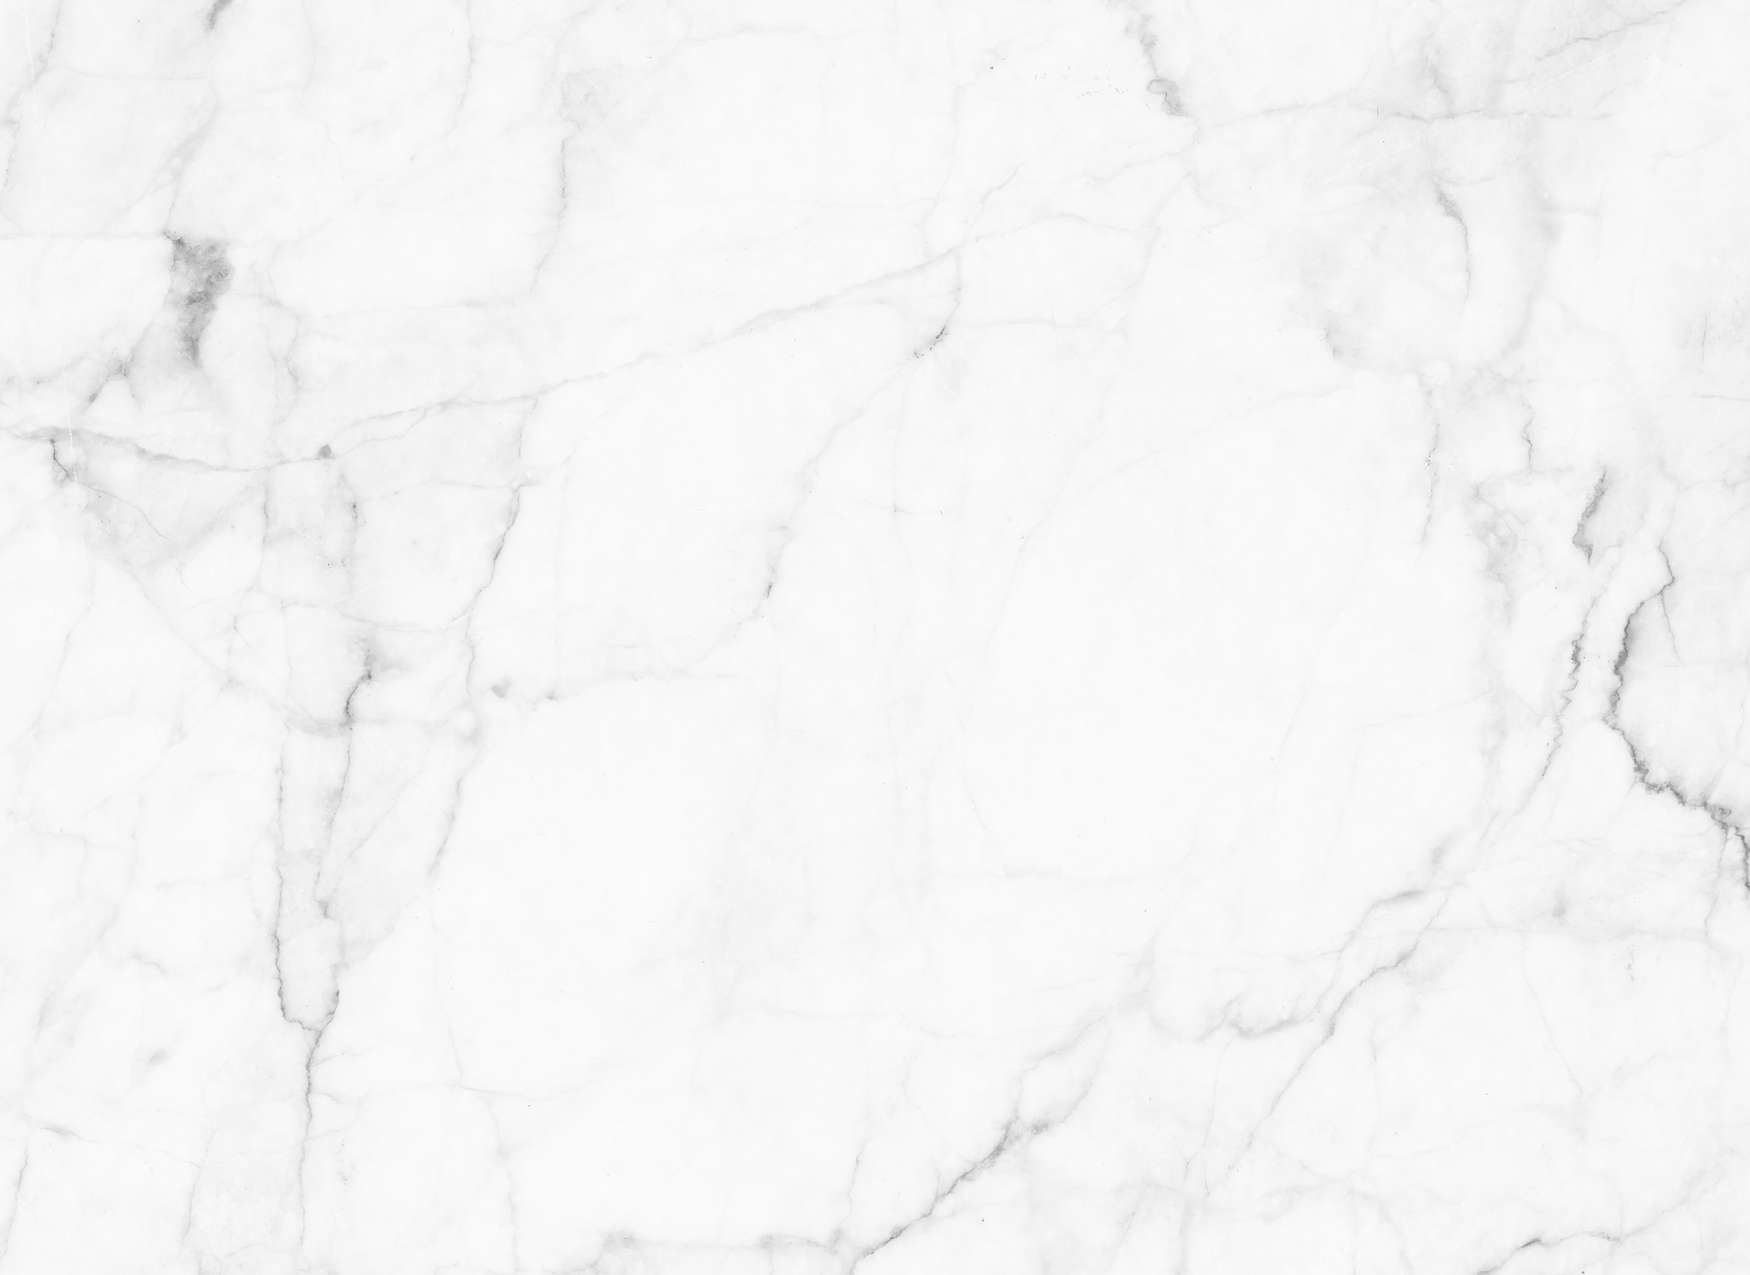             Carta da parati fotografica con aspetto marmoreo - bianco, grigio
        